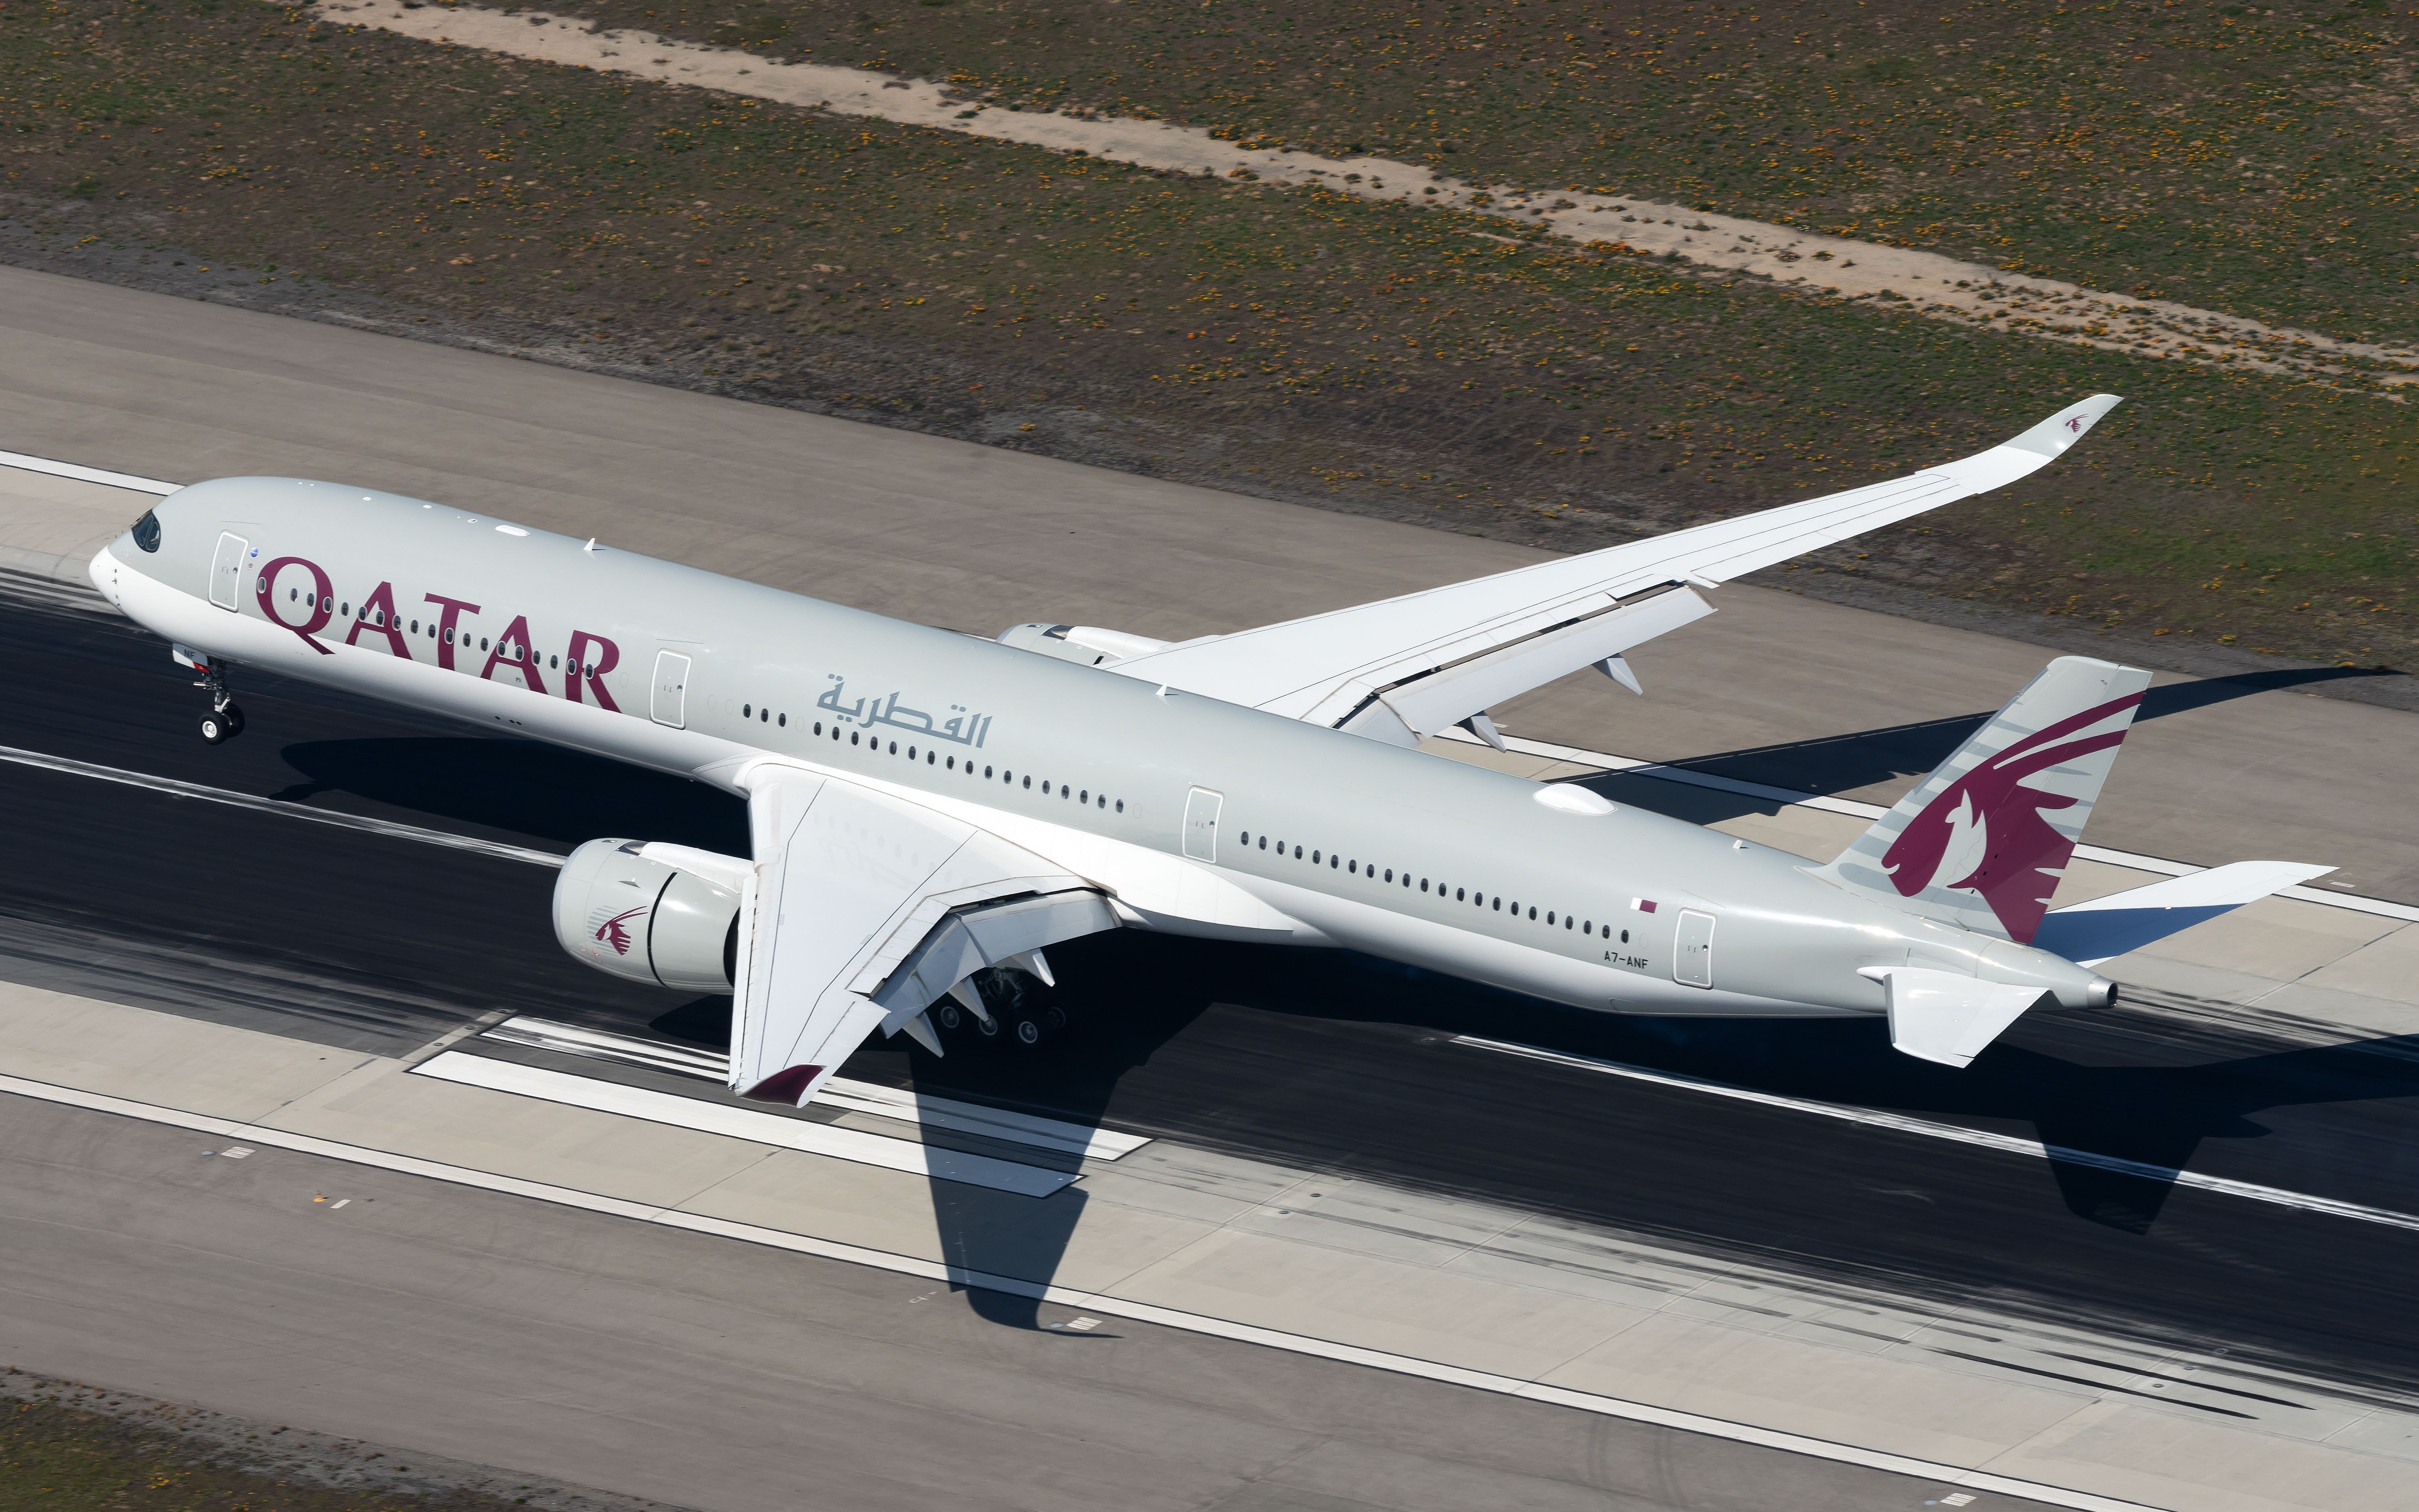 A Qatar Airways Airbus A350-1000 on an airport runway.